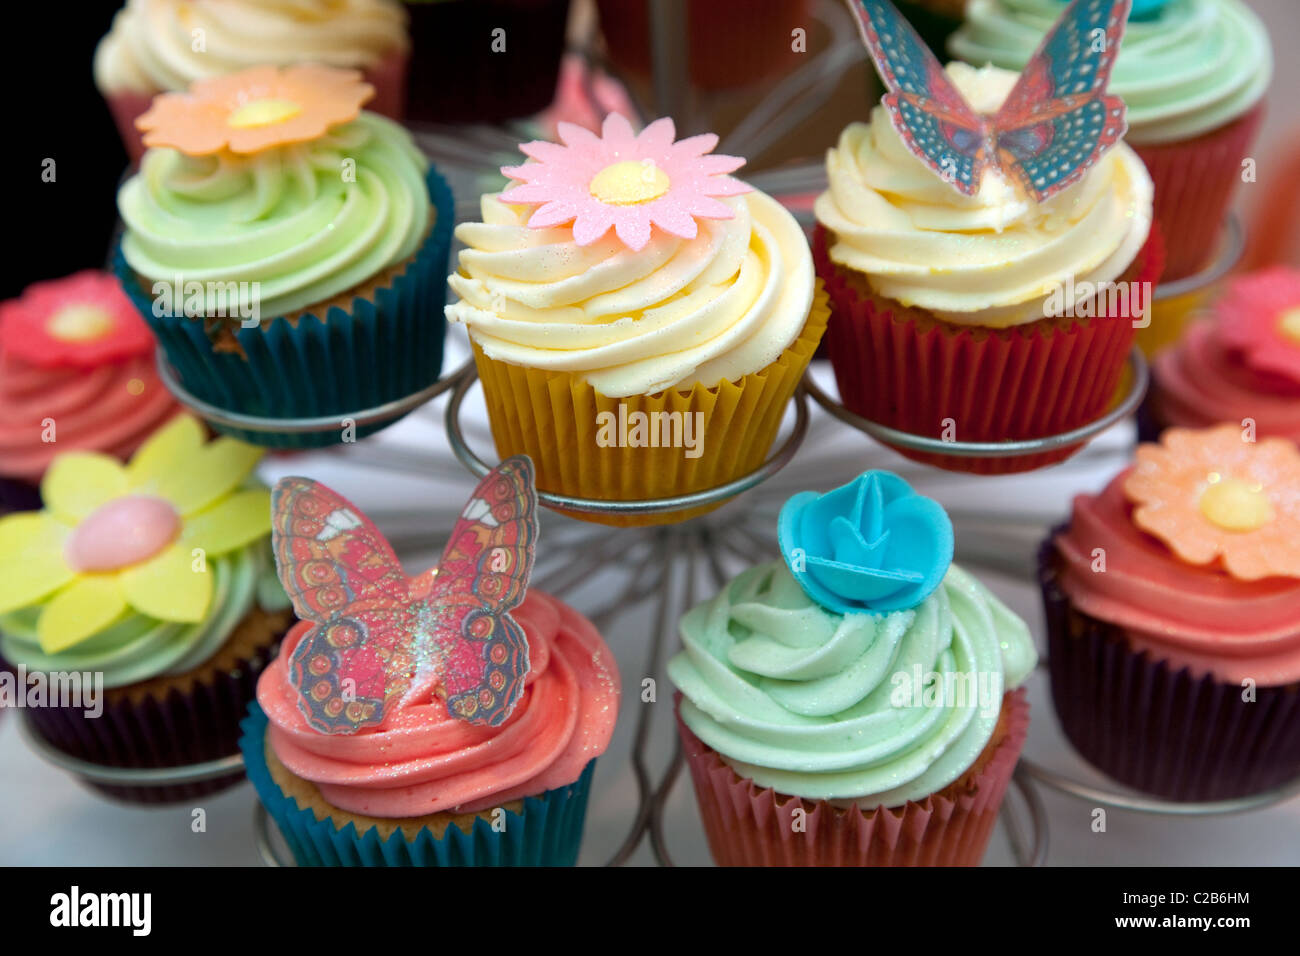 Cupcakes con decoraciones, Londres Foto de stock